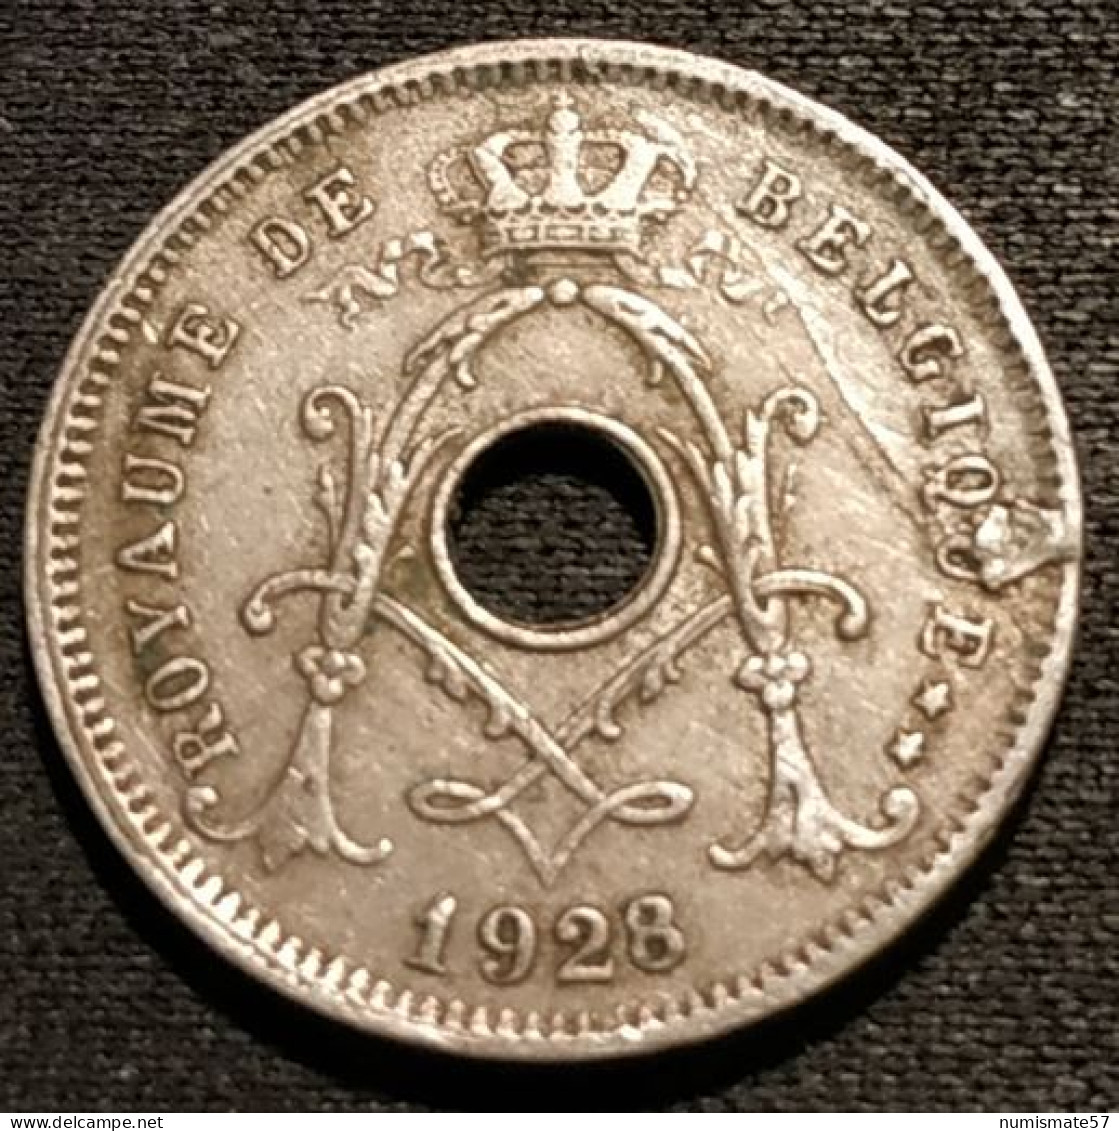 Fautée - Error Coin - BELGIQUE - BELGIUM - 5 CENTIMES 1928 - Légende FR - Albert Ier - Type Michaux - KM 66 - 5 Cents